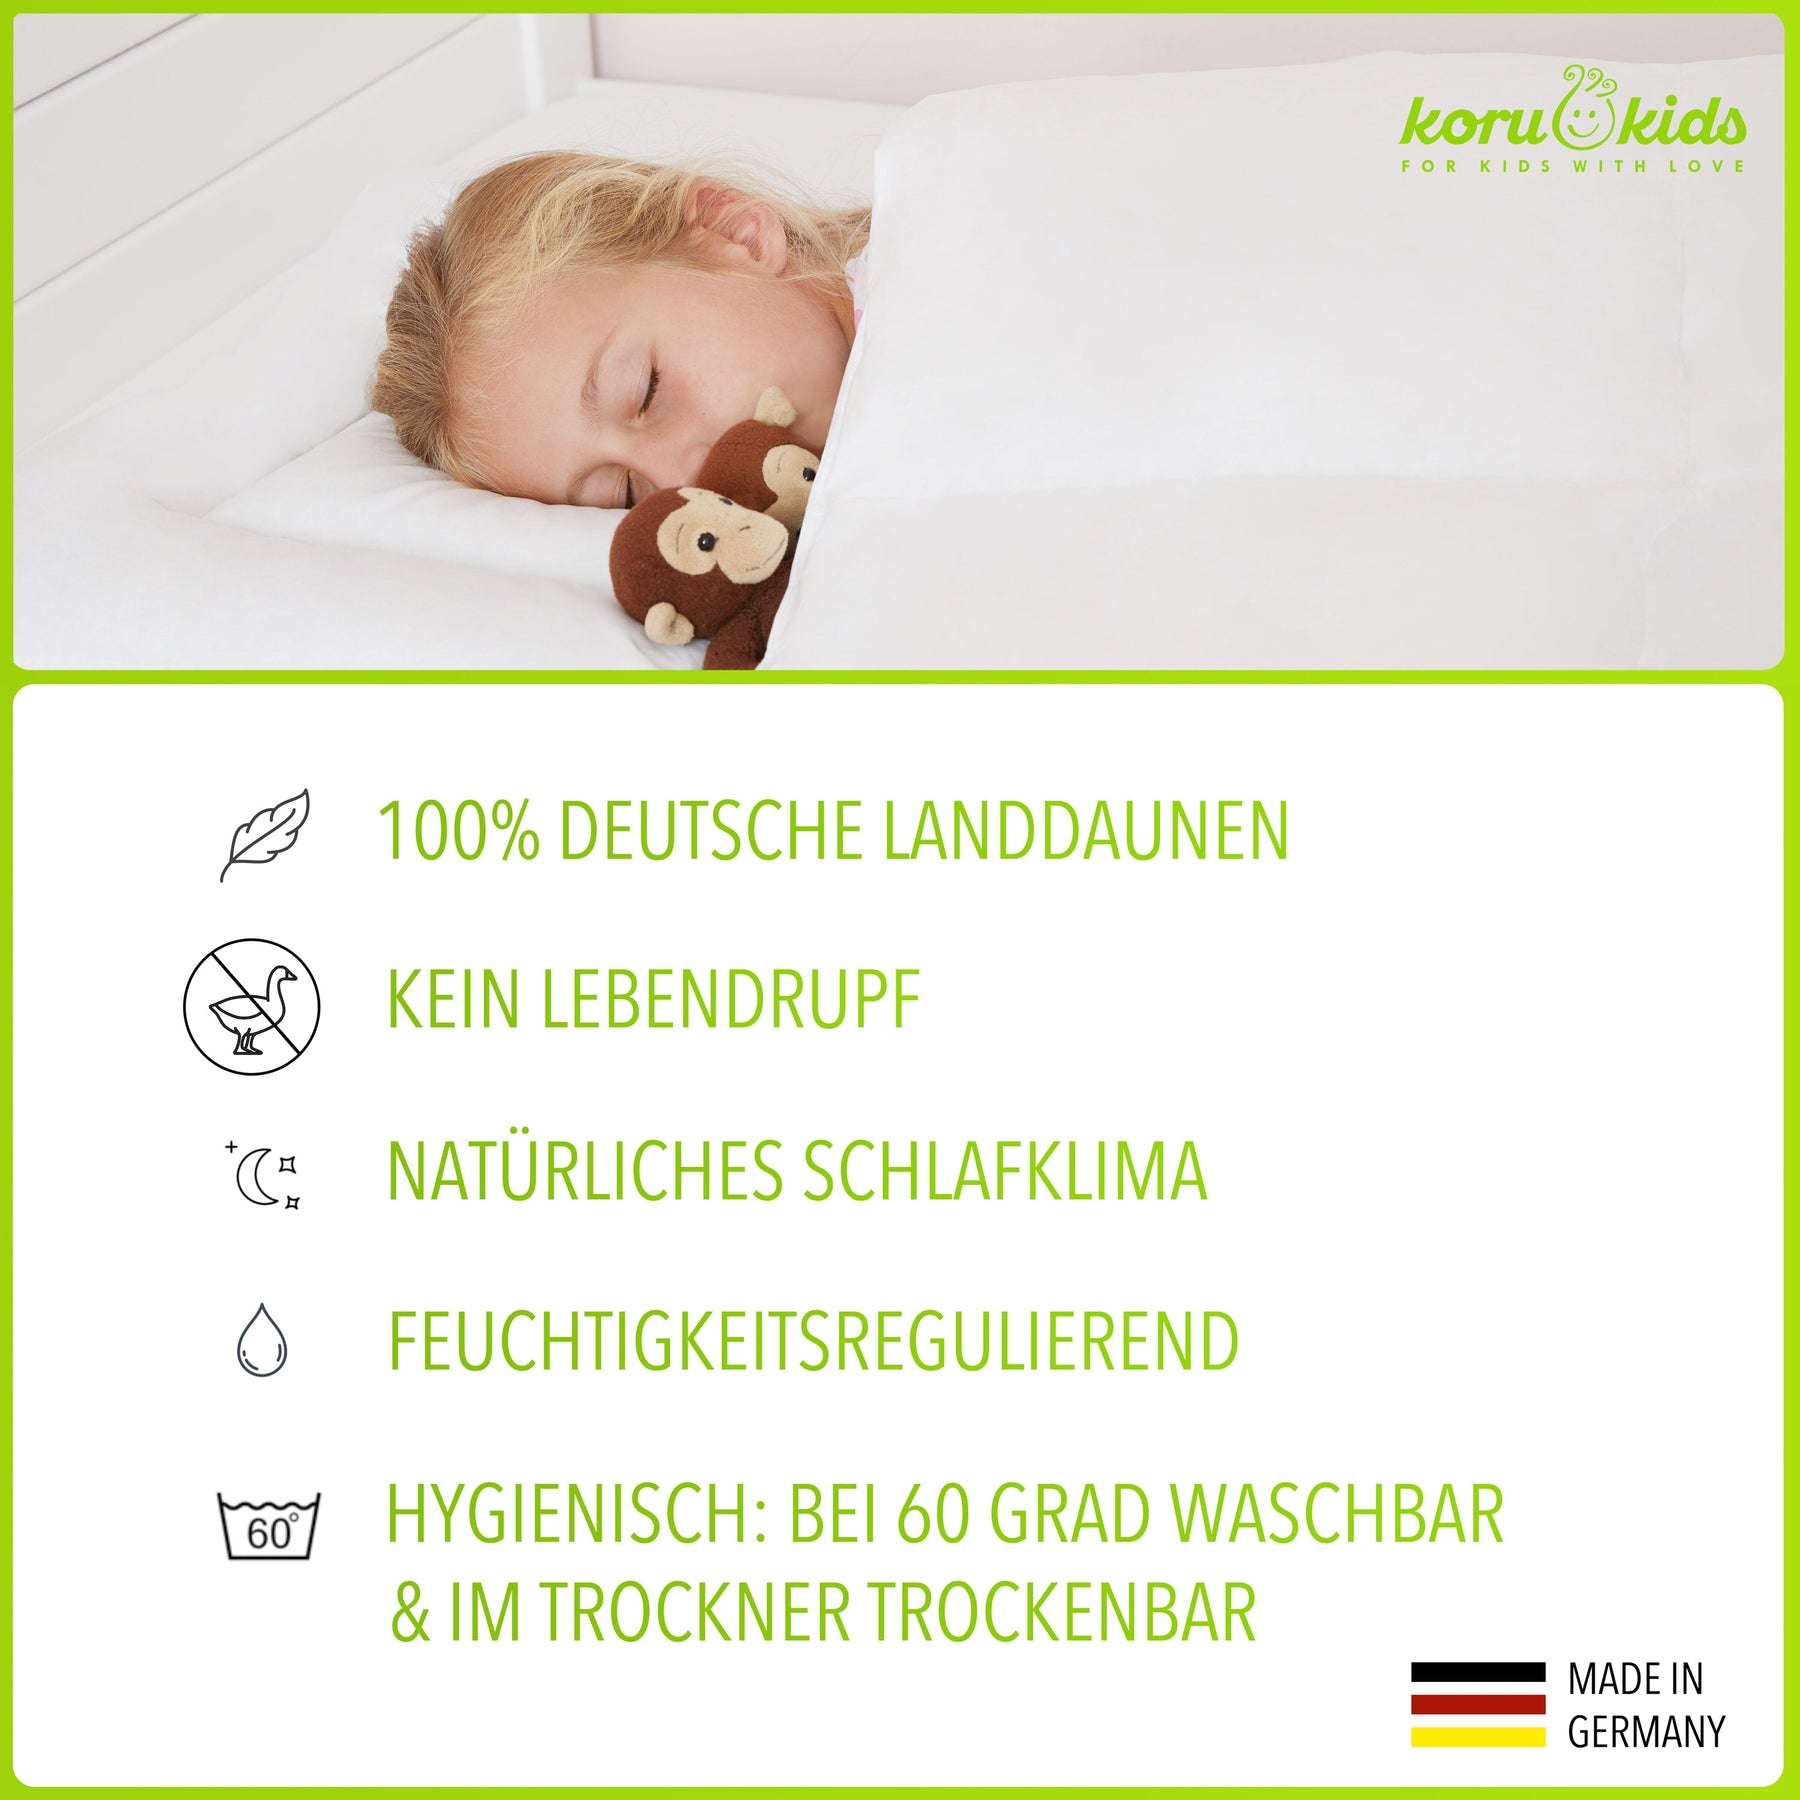 Kinderbettdecke und Kissen | Kinderdaunendecke | Koru – Koru GmbH Kids Deutschland